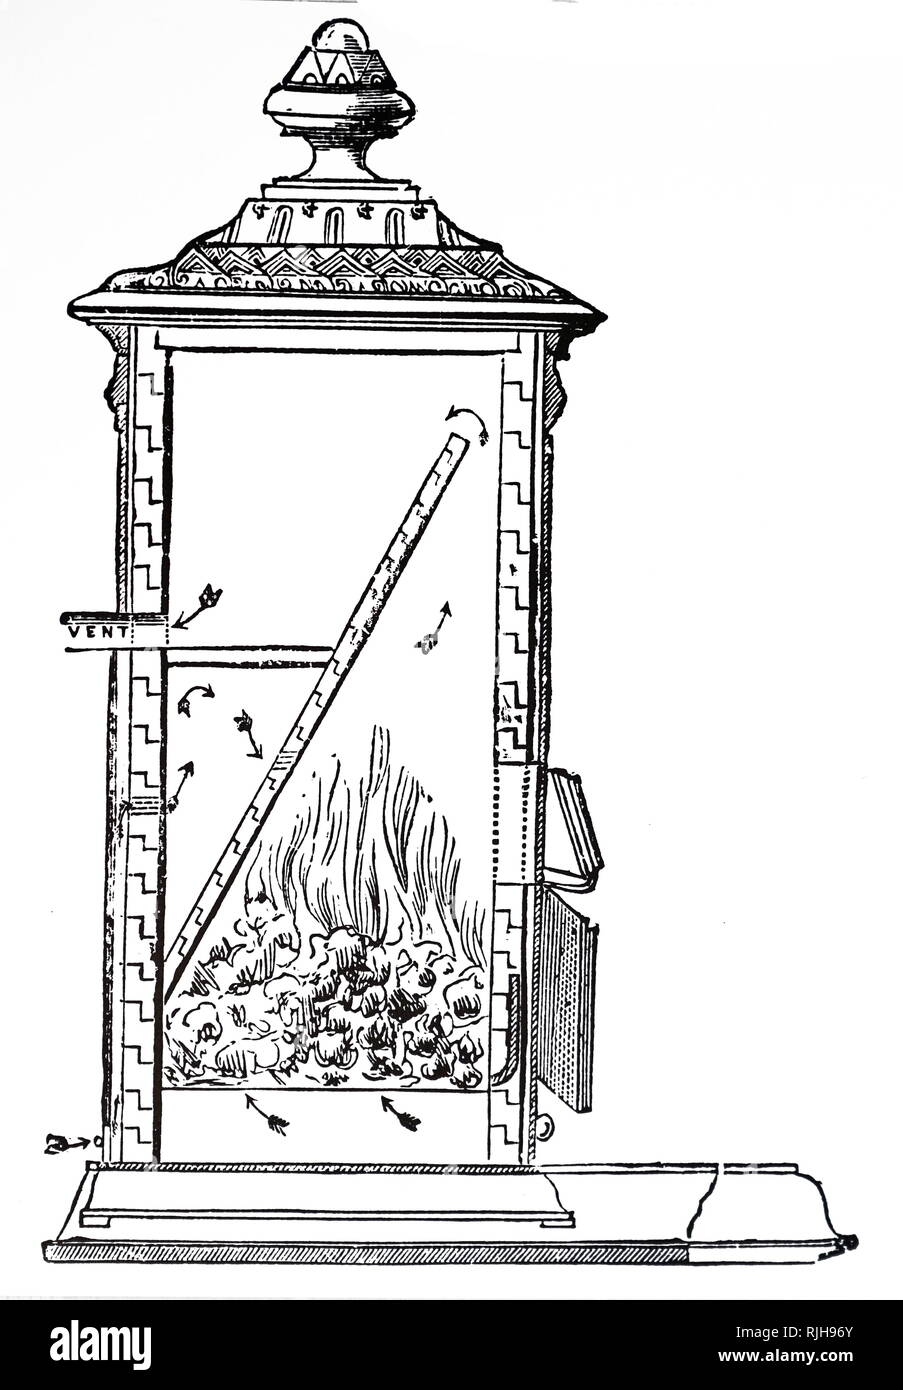 Ein kupferstich mit der Darstellung eines Schnittbild eines Kachelofen von J. Dunnachie, an der Rauch Kürzungen Ausstellung in London gezeigt. Vom 19. Jahrhundert Stockfoto